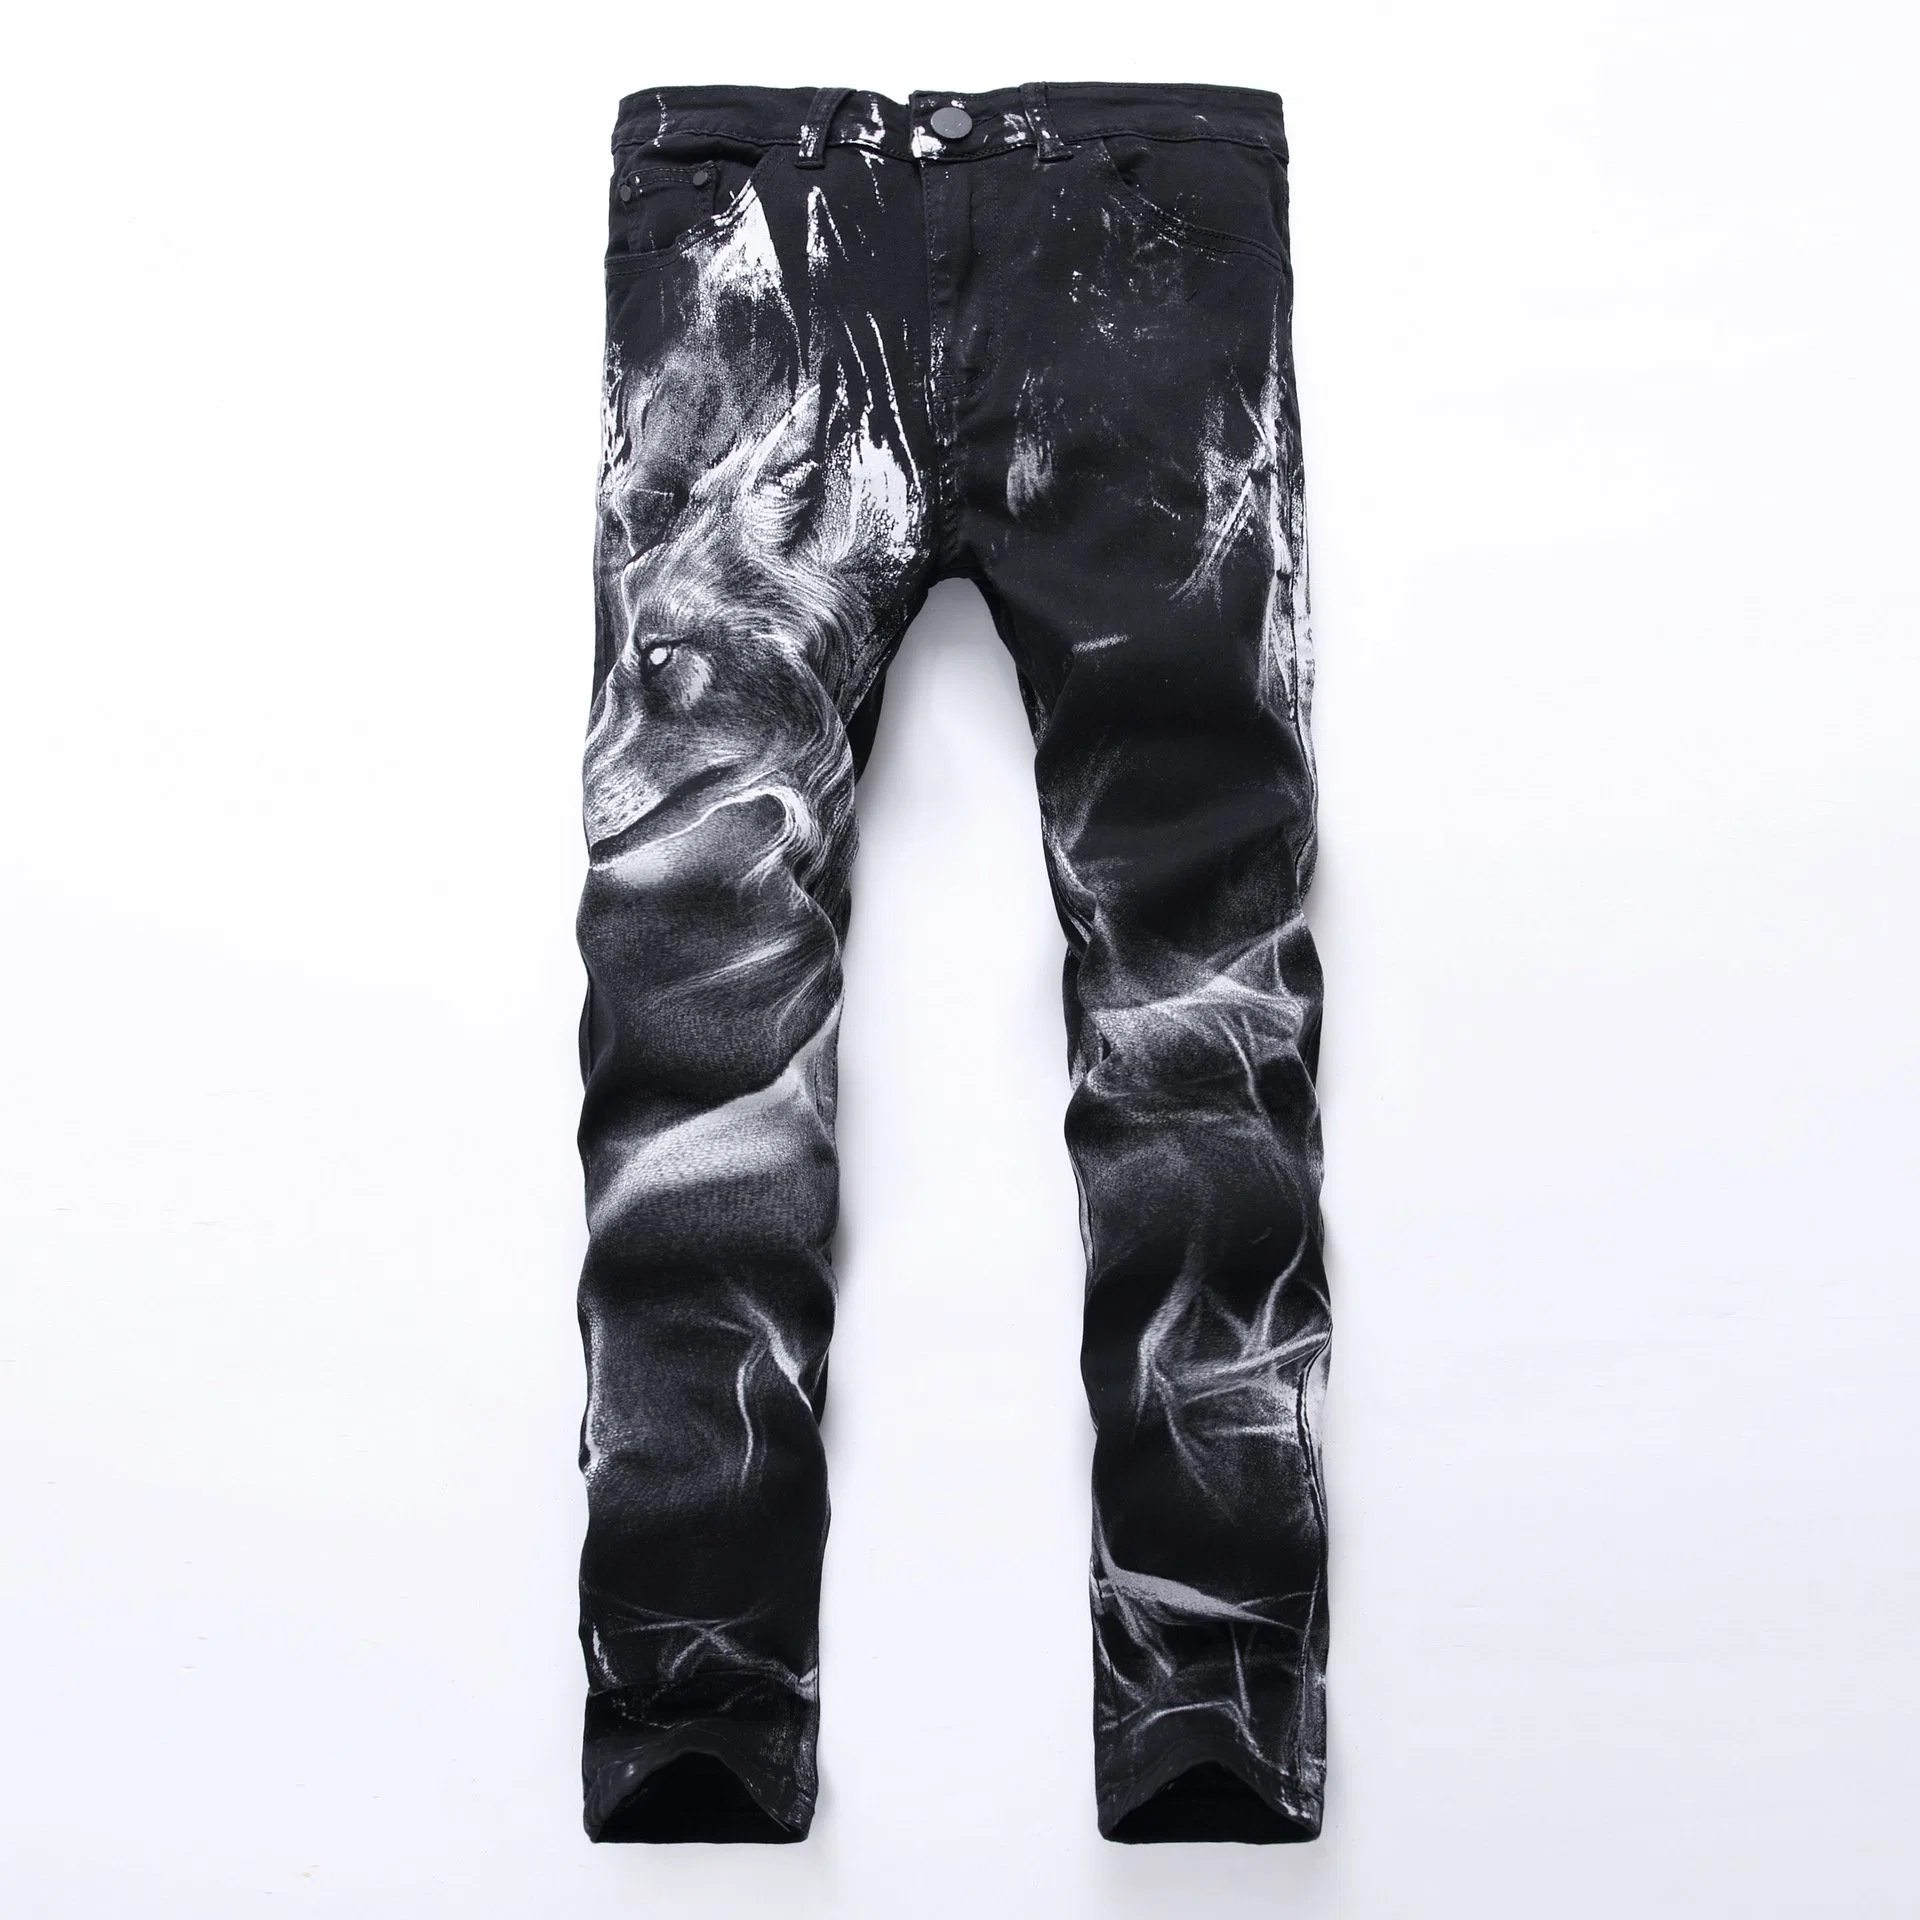 3D Impresso Jeans Stretch homens fino de moda jeans Denim